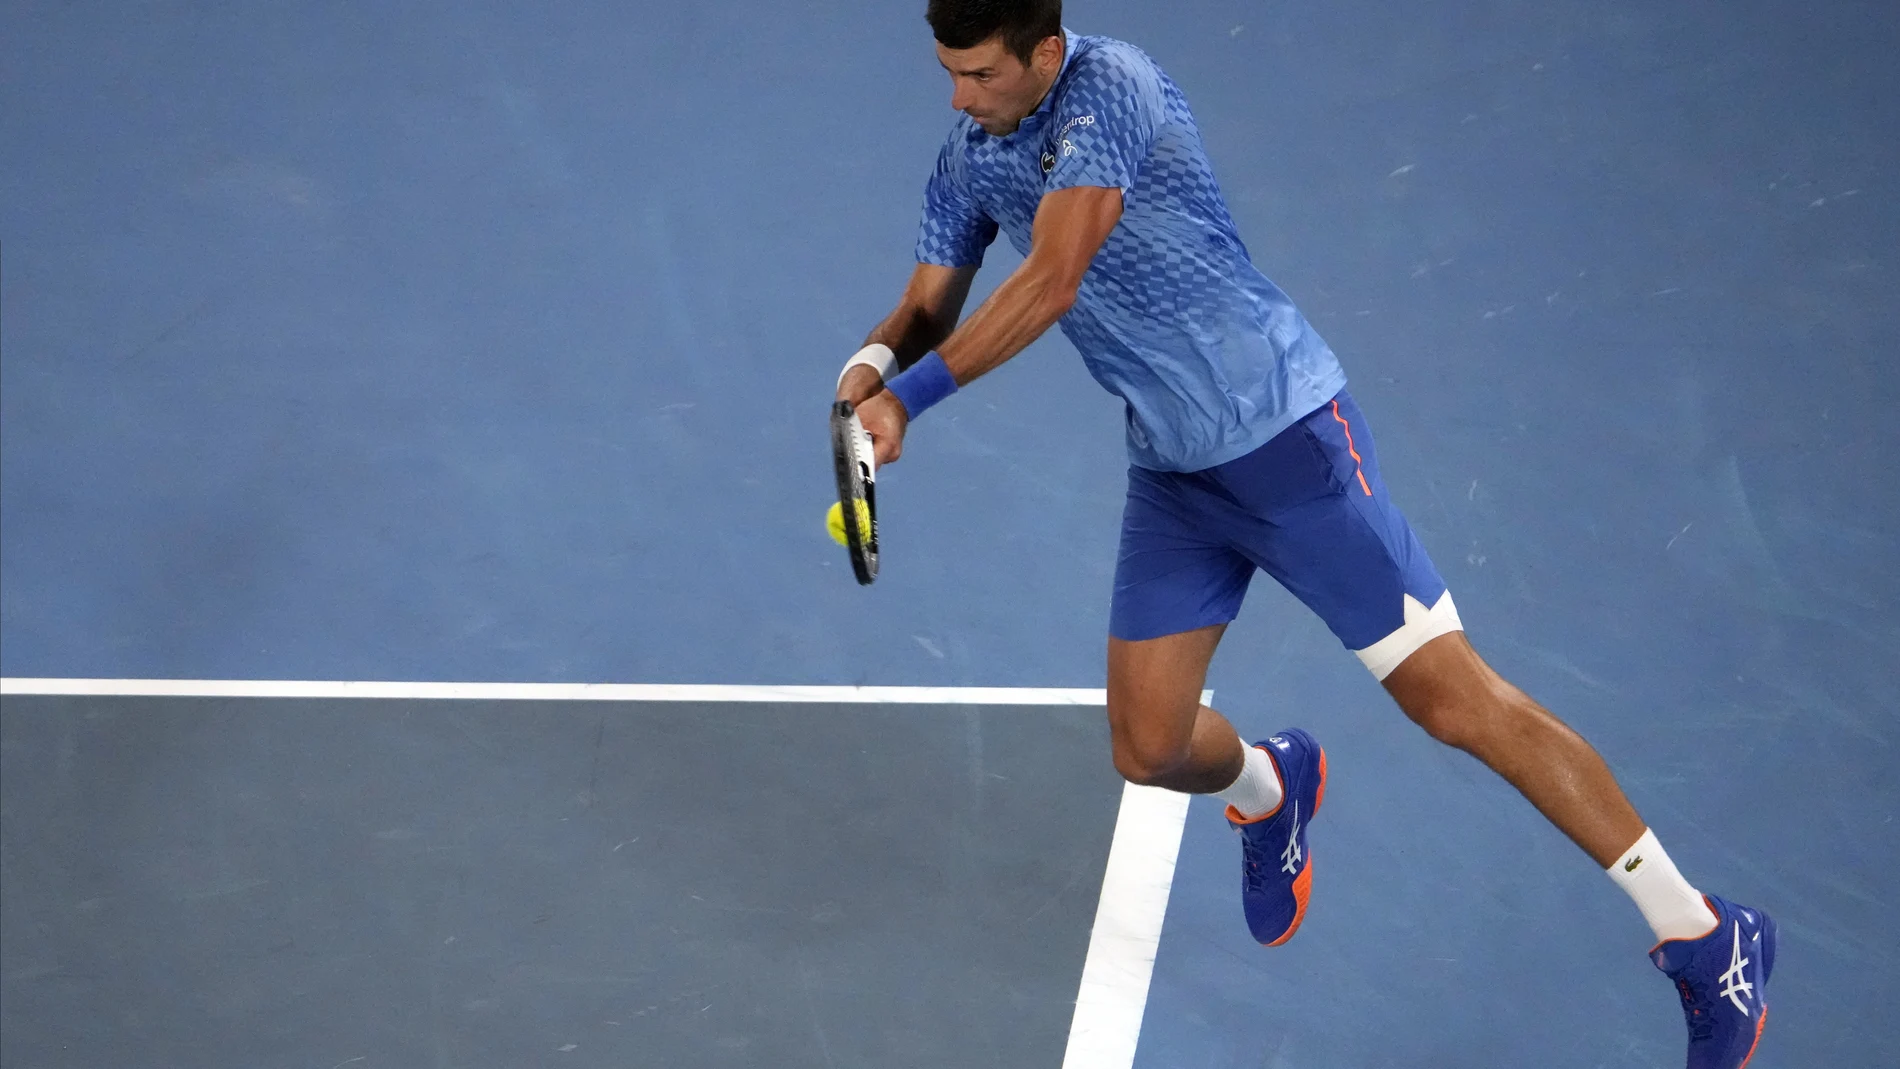 Novak Djokovic golpea un revés a dos manos desde el fondo de la pista